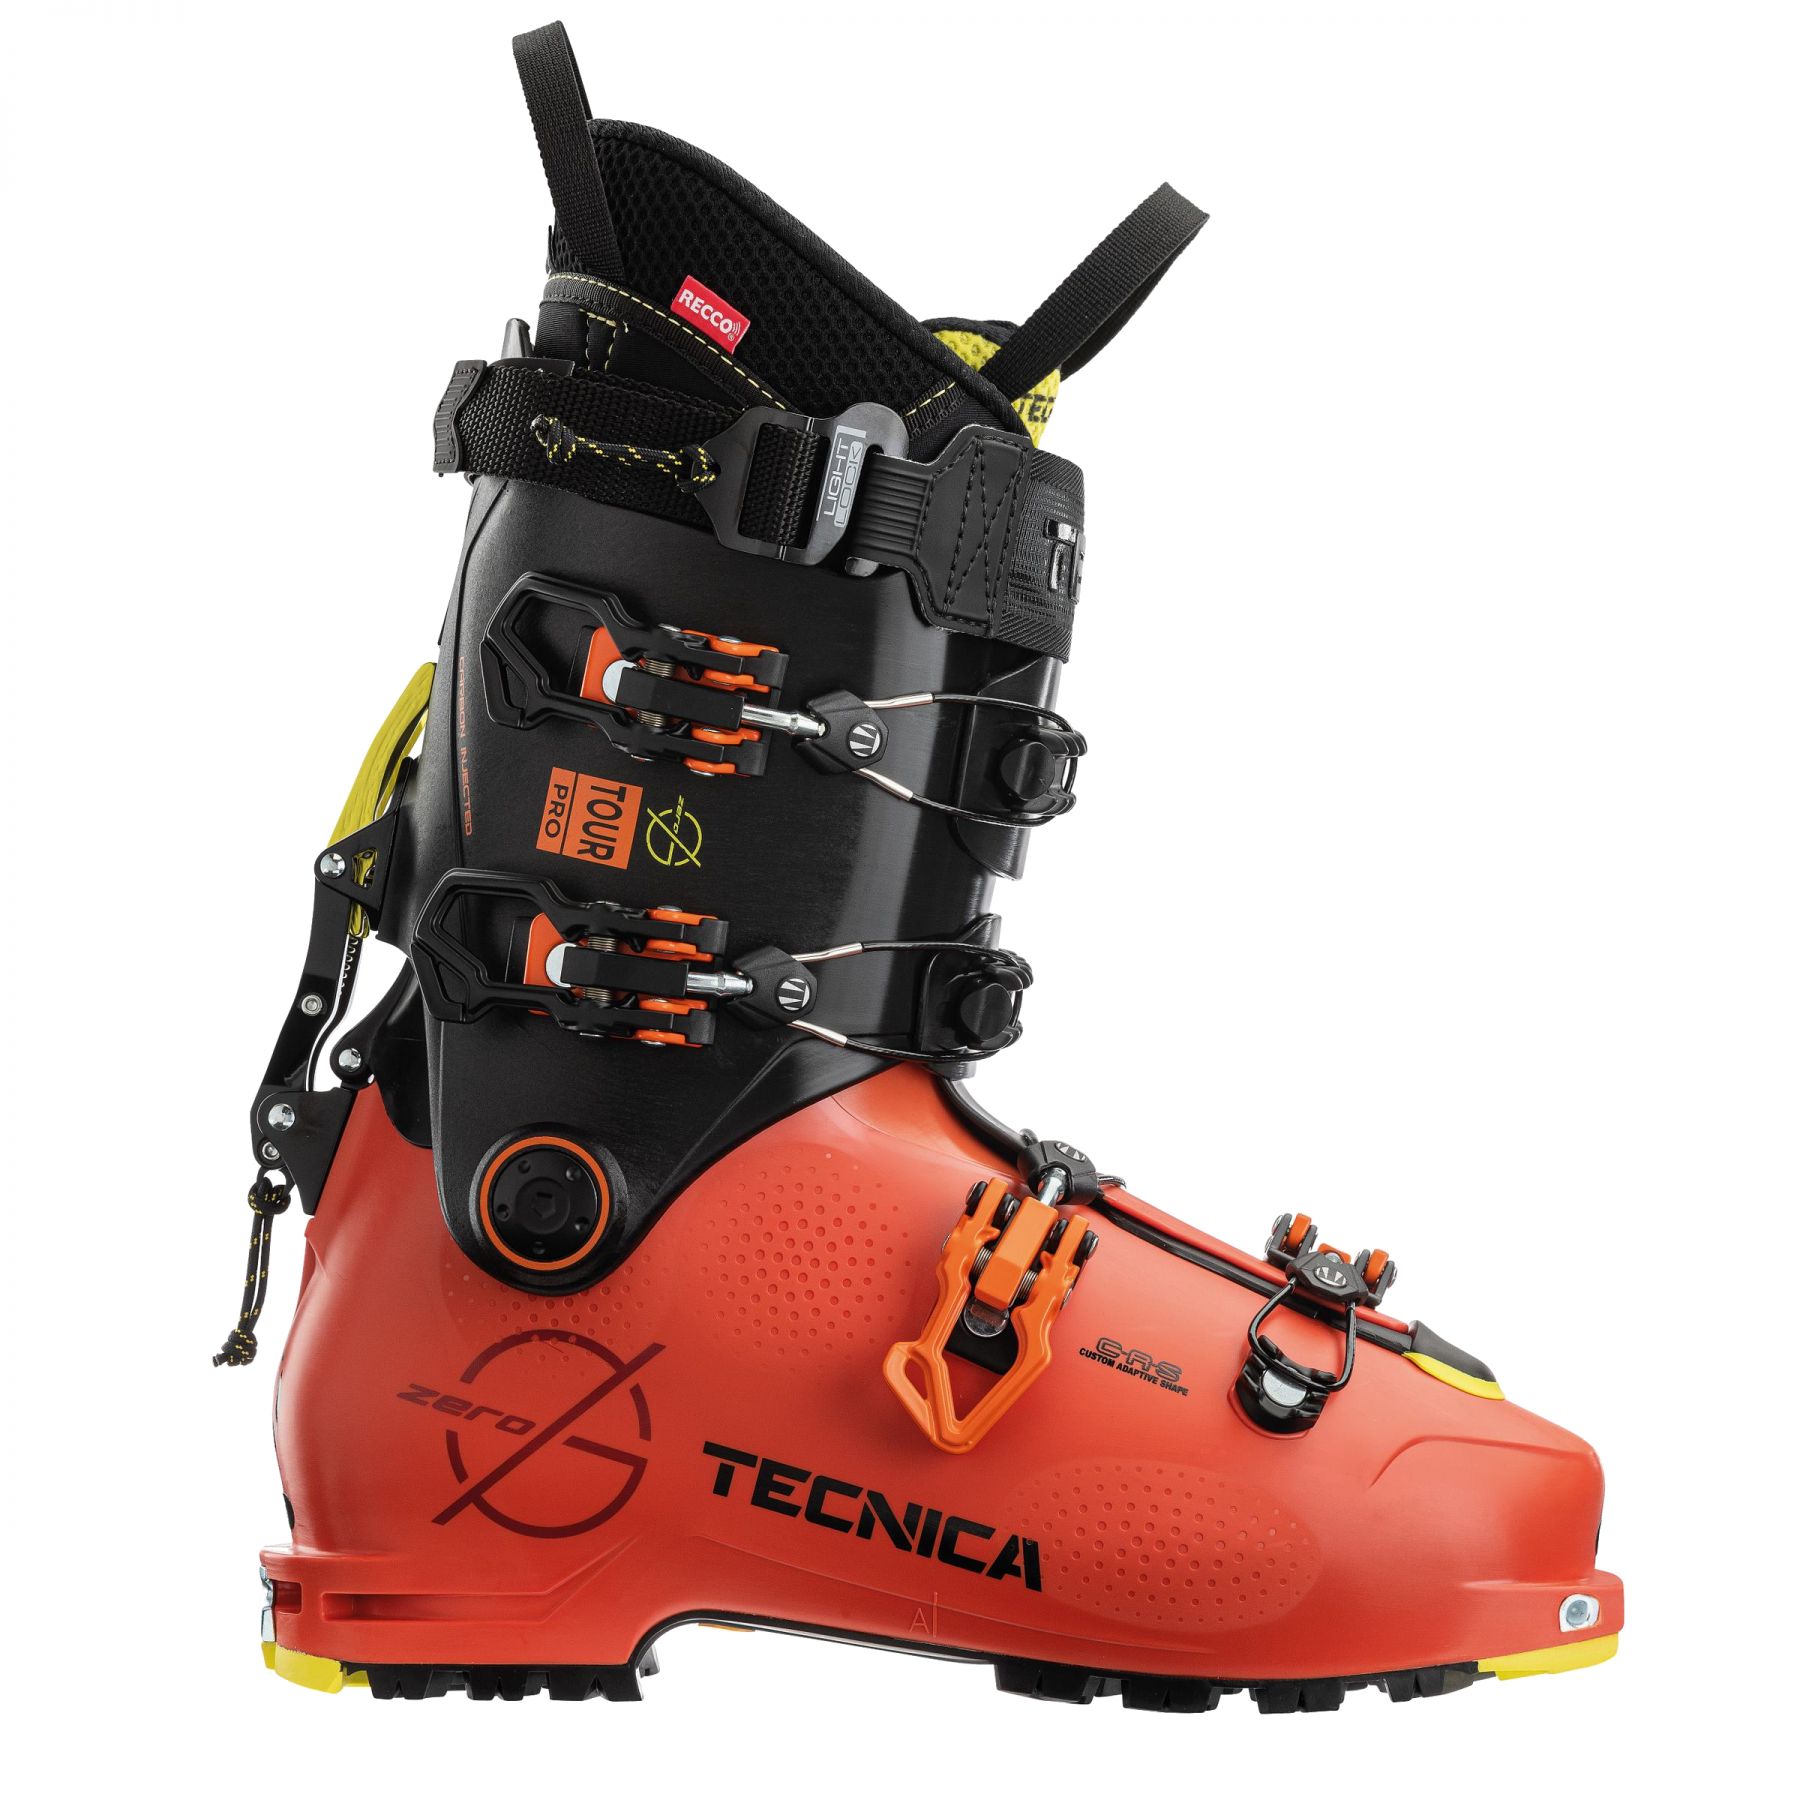 Billede af Tecnica Zero G Tour Pro, skistøvler, herre, orange/sort hos Skisport.dk